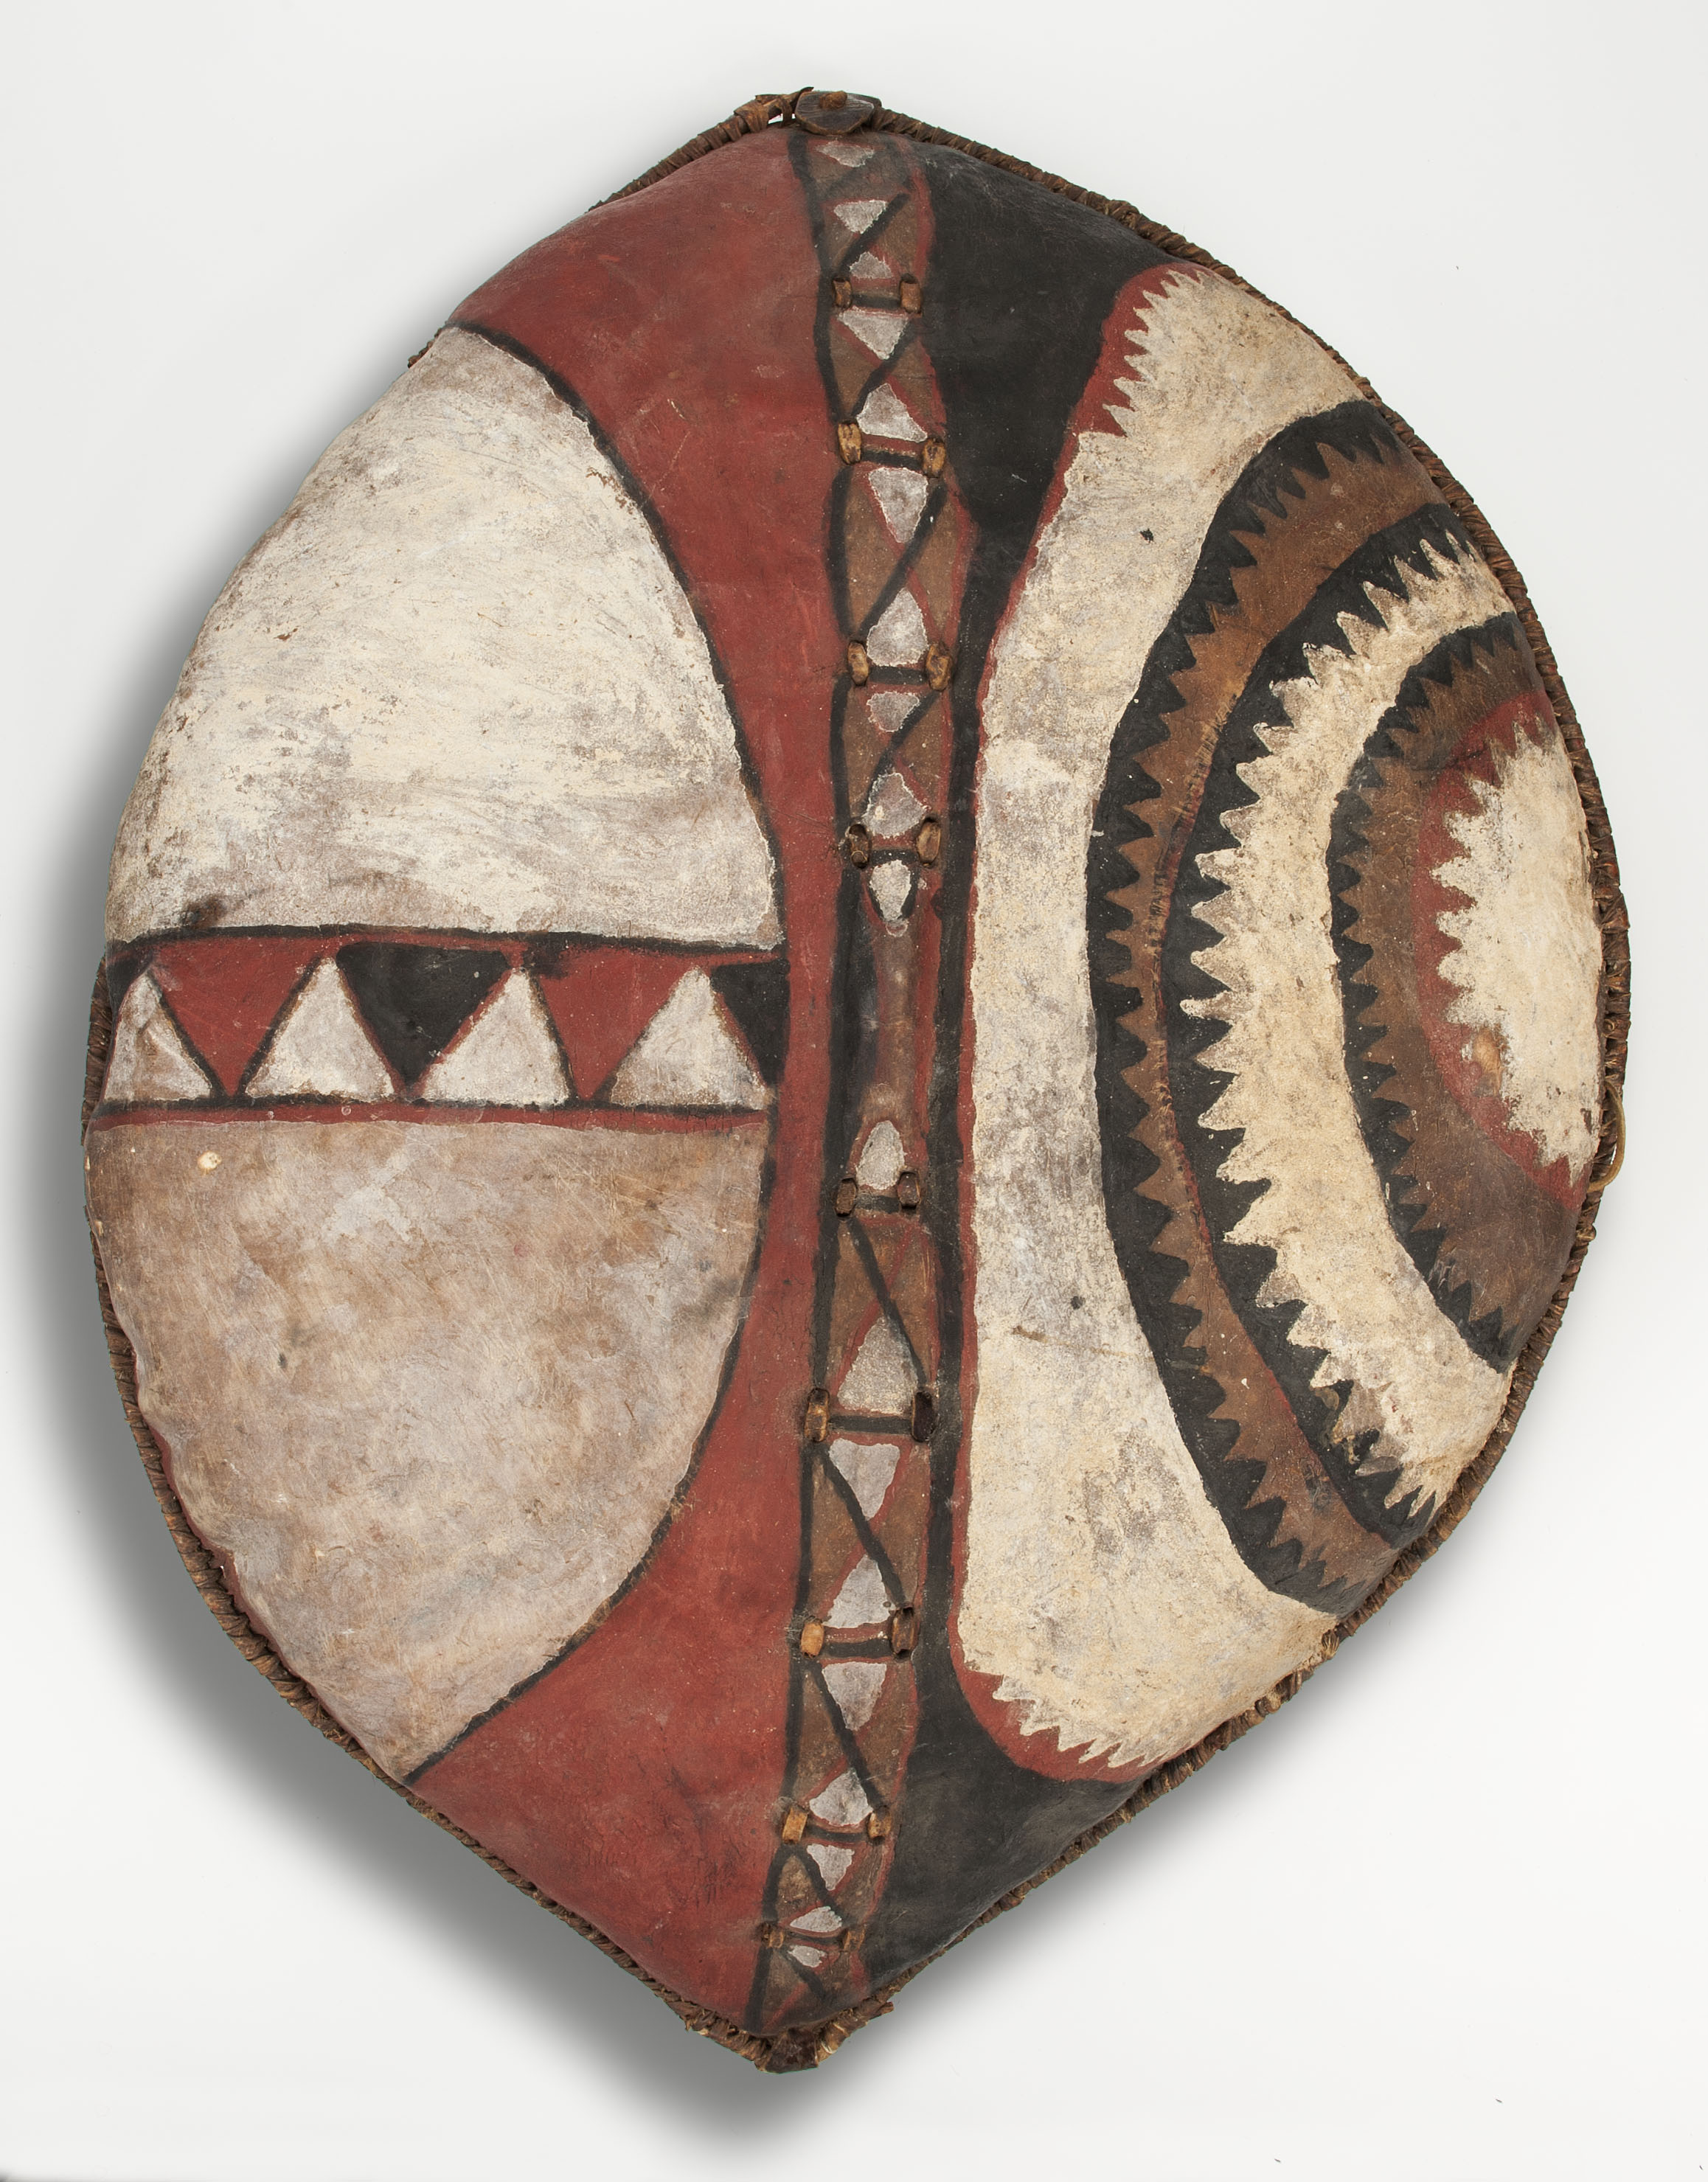 Scut by Unknown Artist - colectat în apropiere de Narok în 1977 - 94 x 72.4 cm 